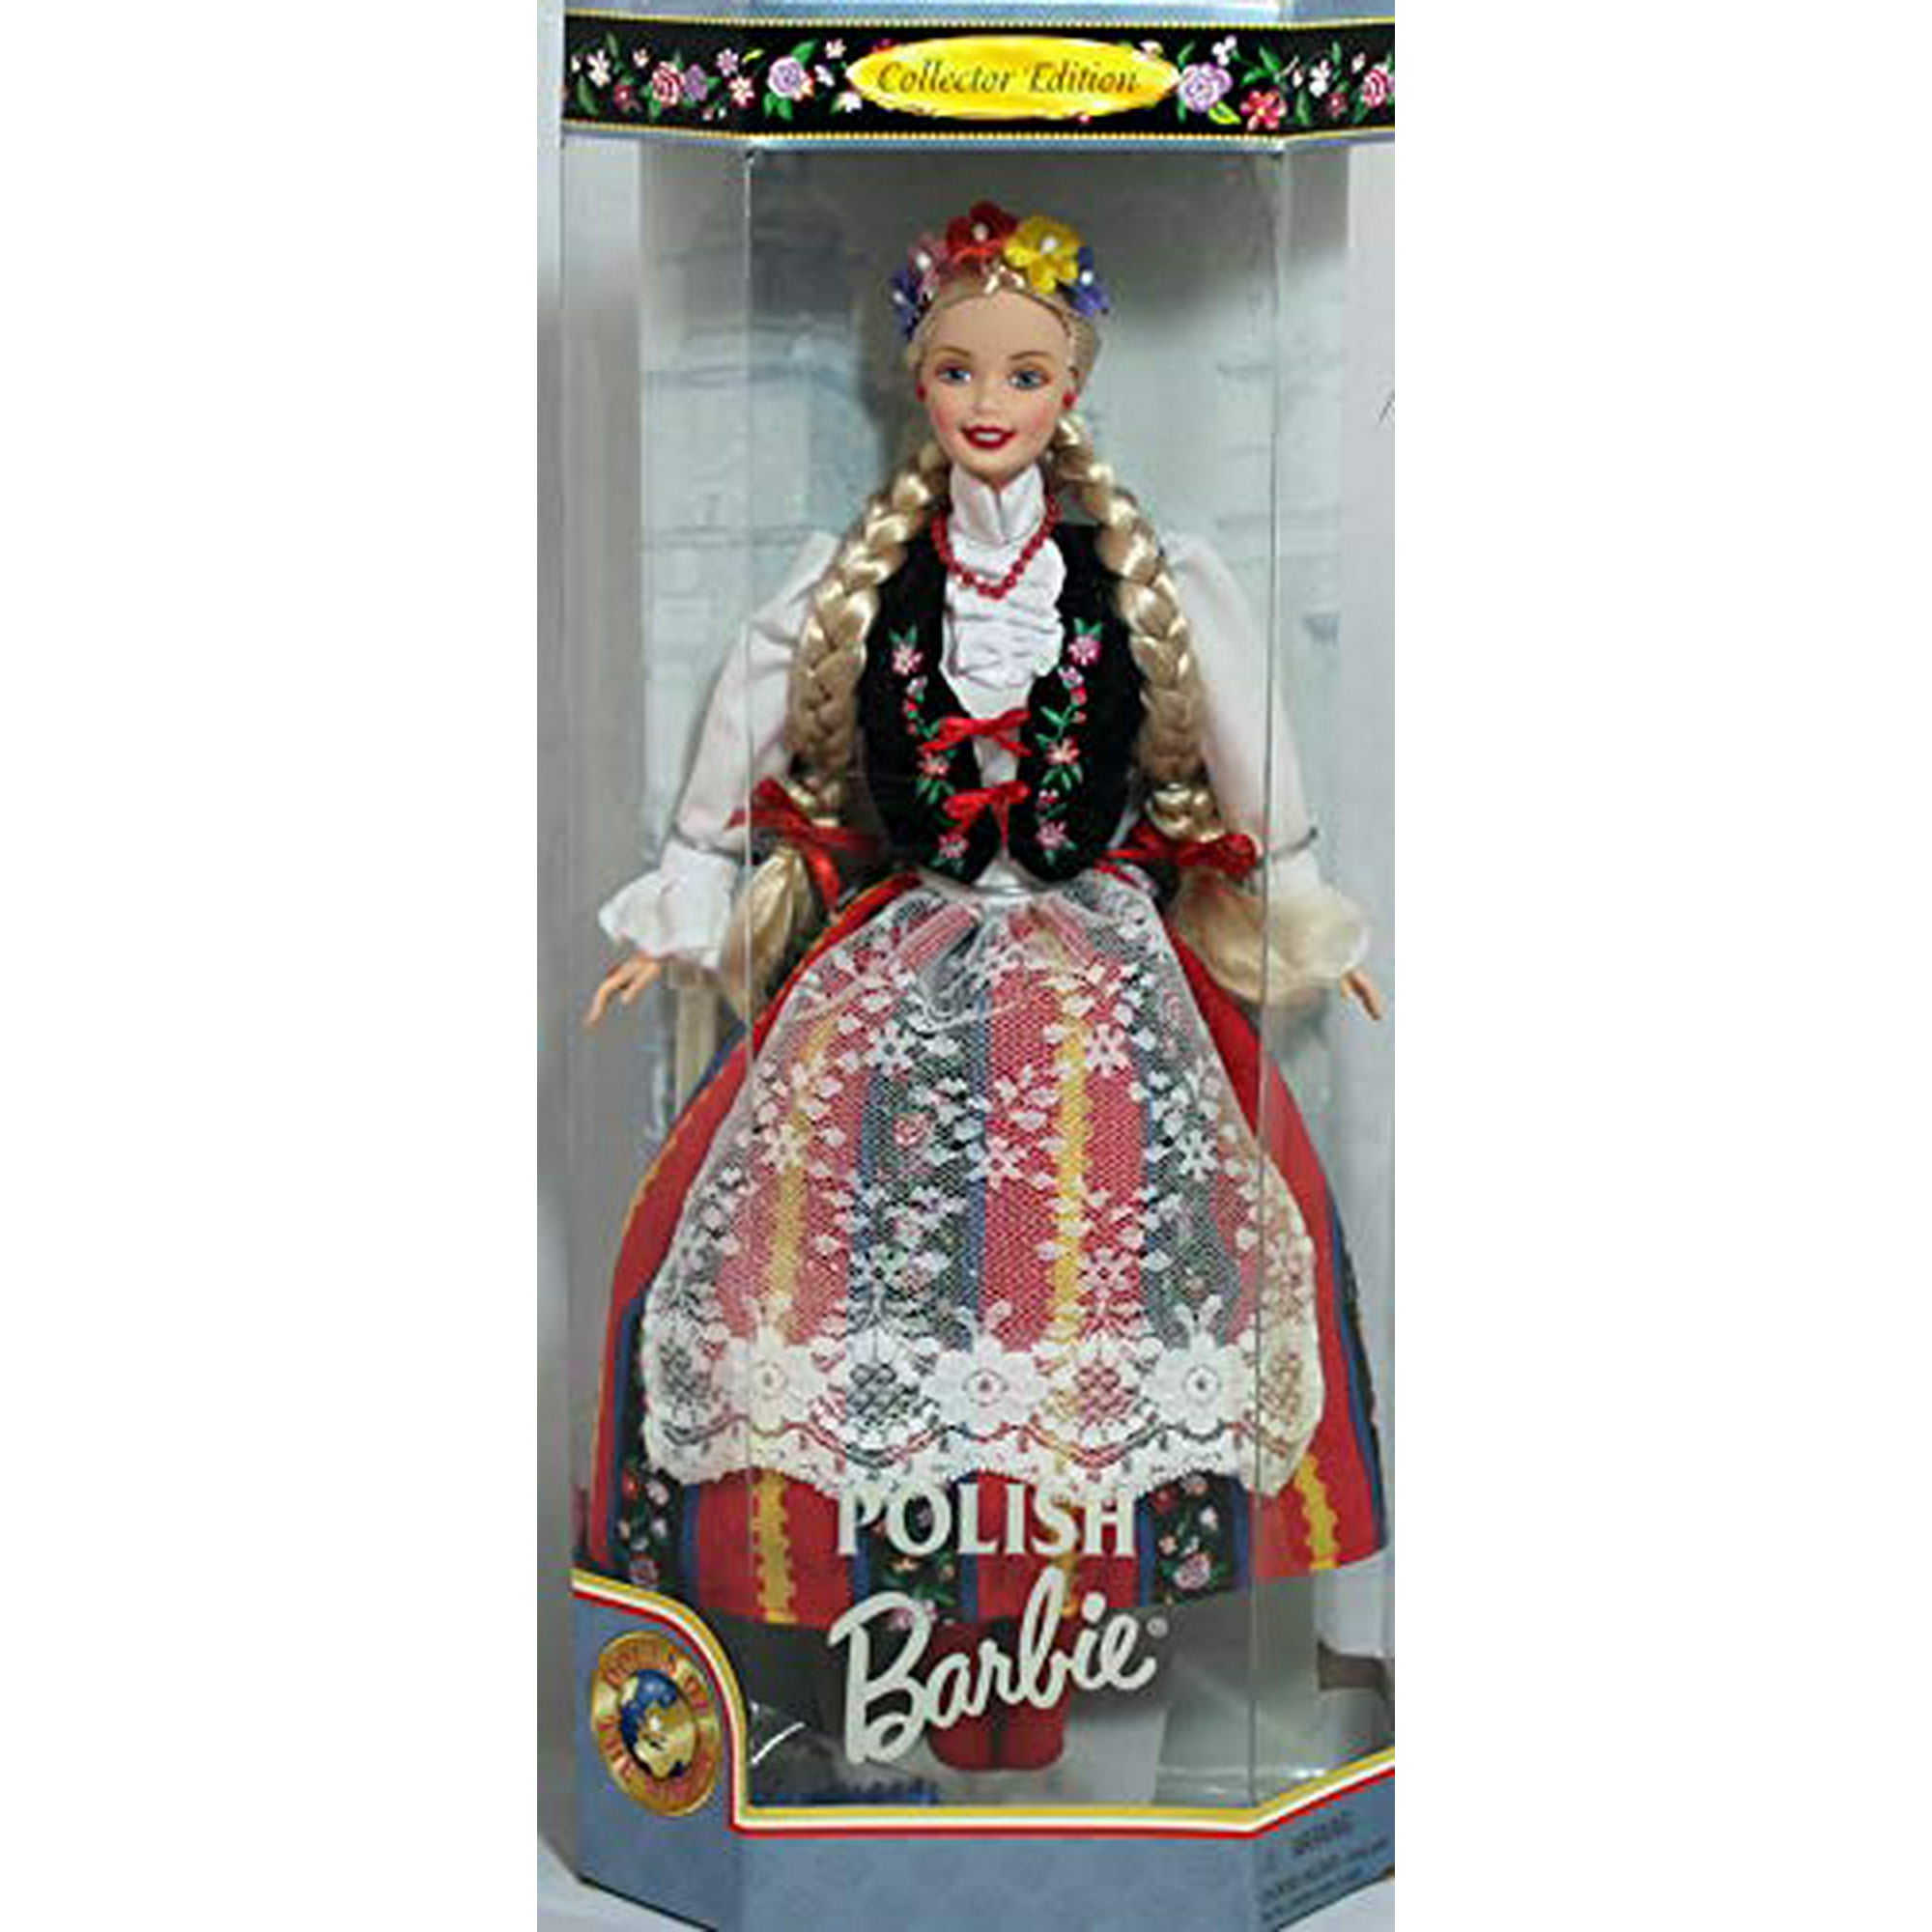 出 産 祝 い な ど も 豊 富 Barbie Mattel by (1997) Barbie Polish Edition Collector W...